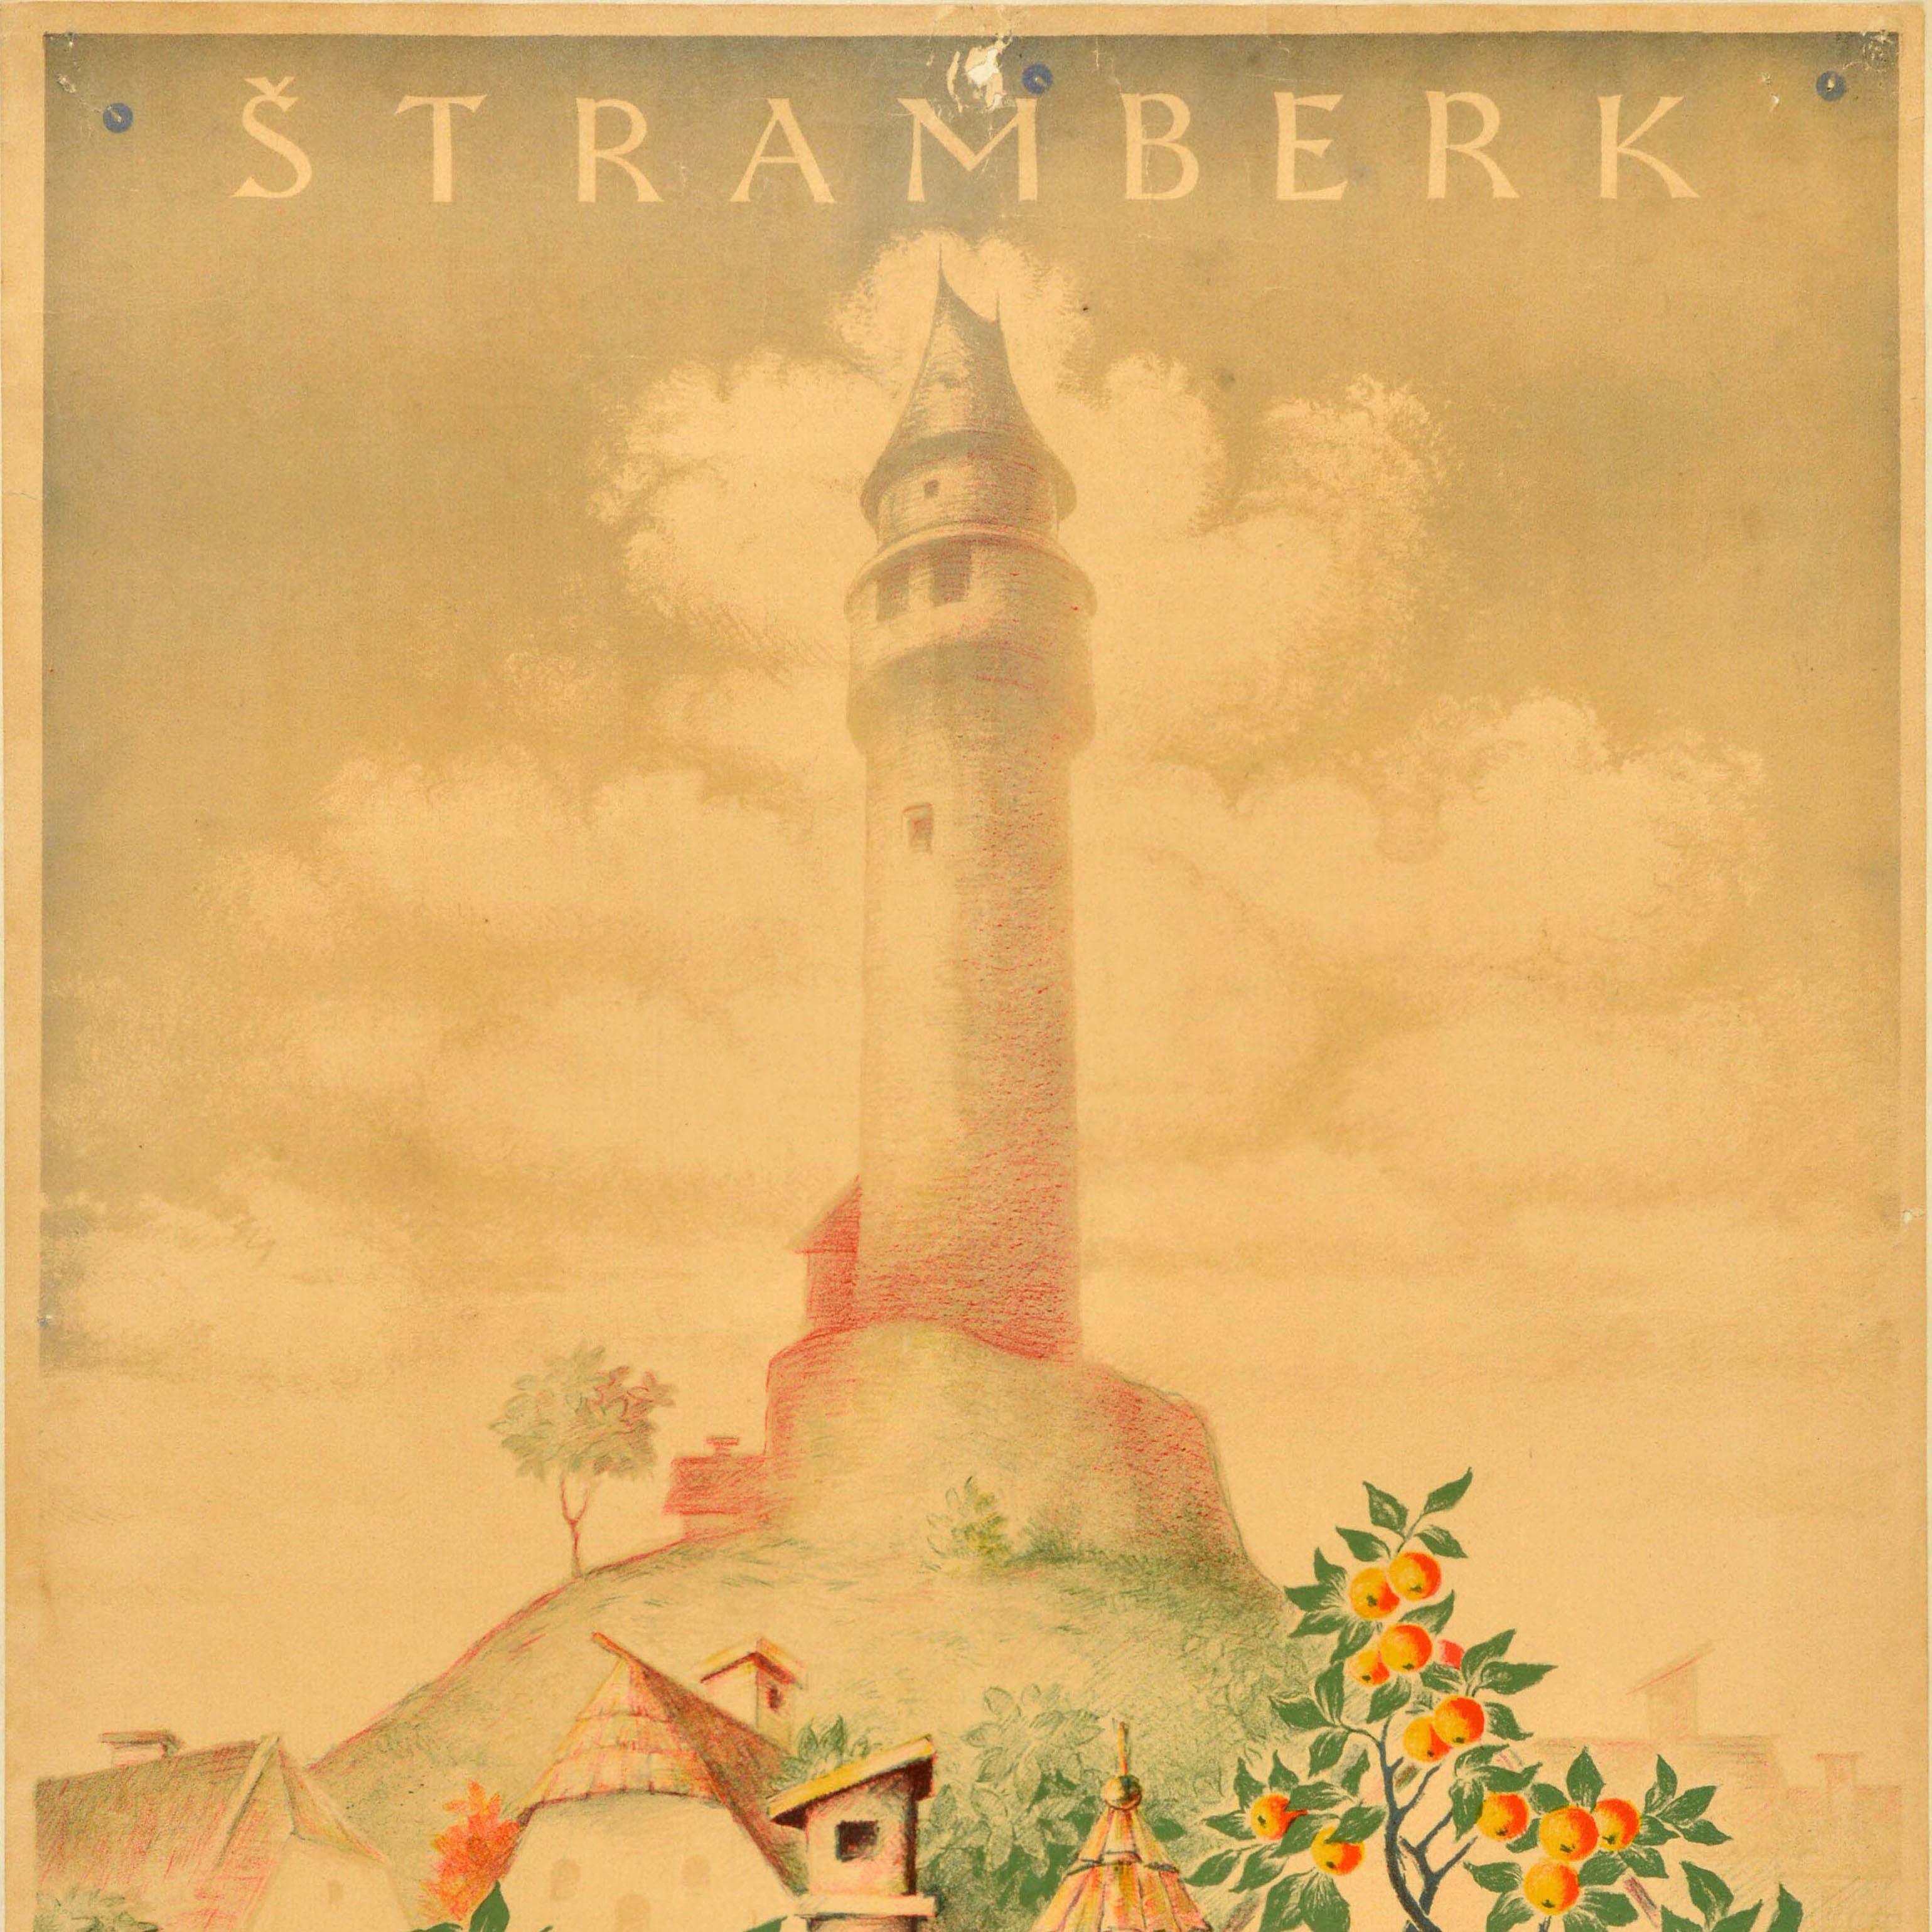 Affiche publicitaire d'époque pour les Chemins de Fer de l'Etat Tchécoslovaque / Czechoslovak State Railways représentant une maison de village pittoresque avec des fleurs sur les rebords des fenêtres, des tournesols dans le jardin et un pommier